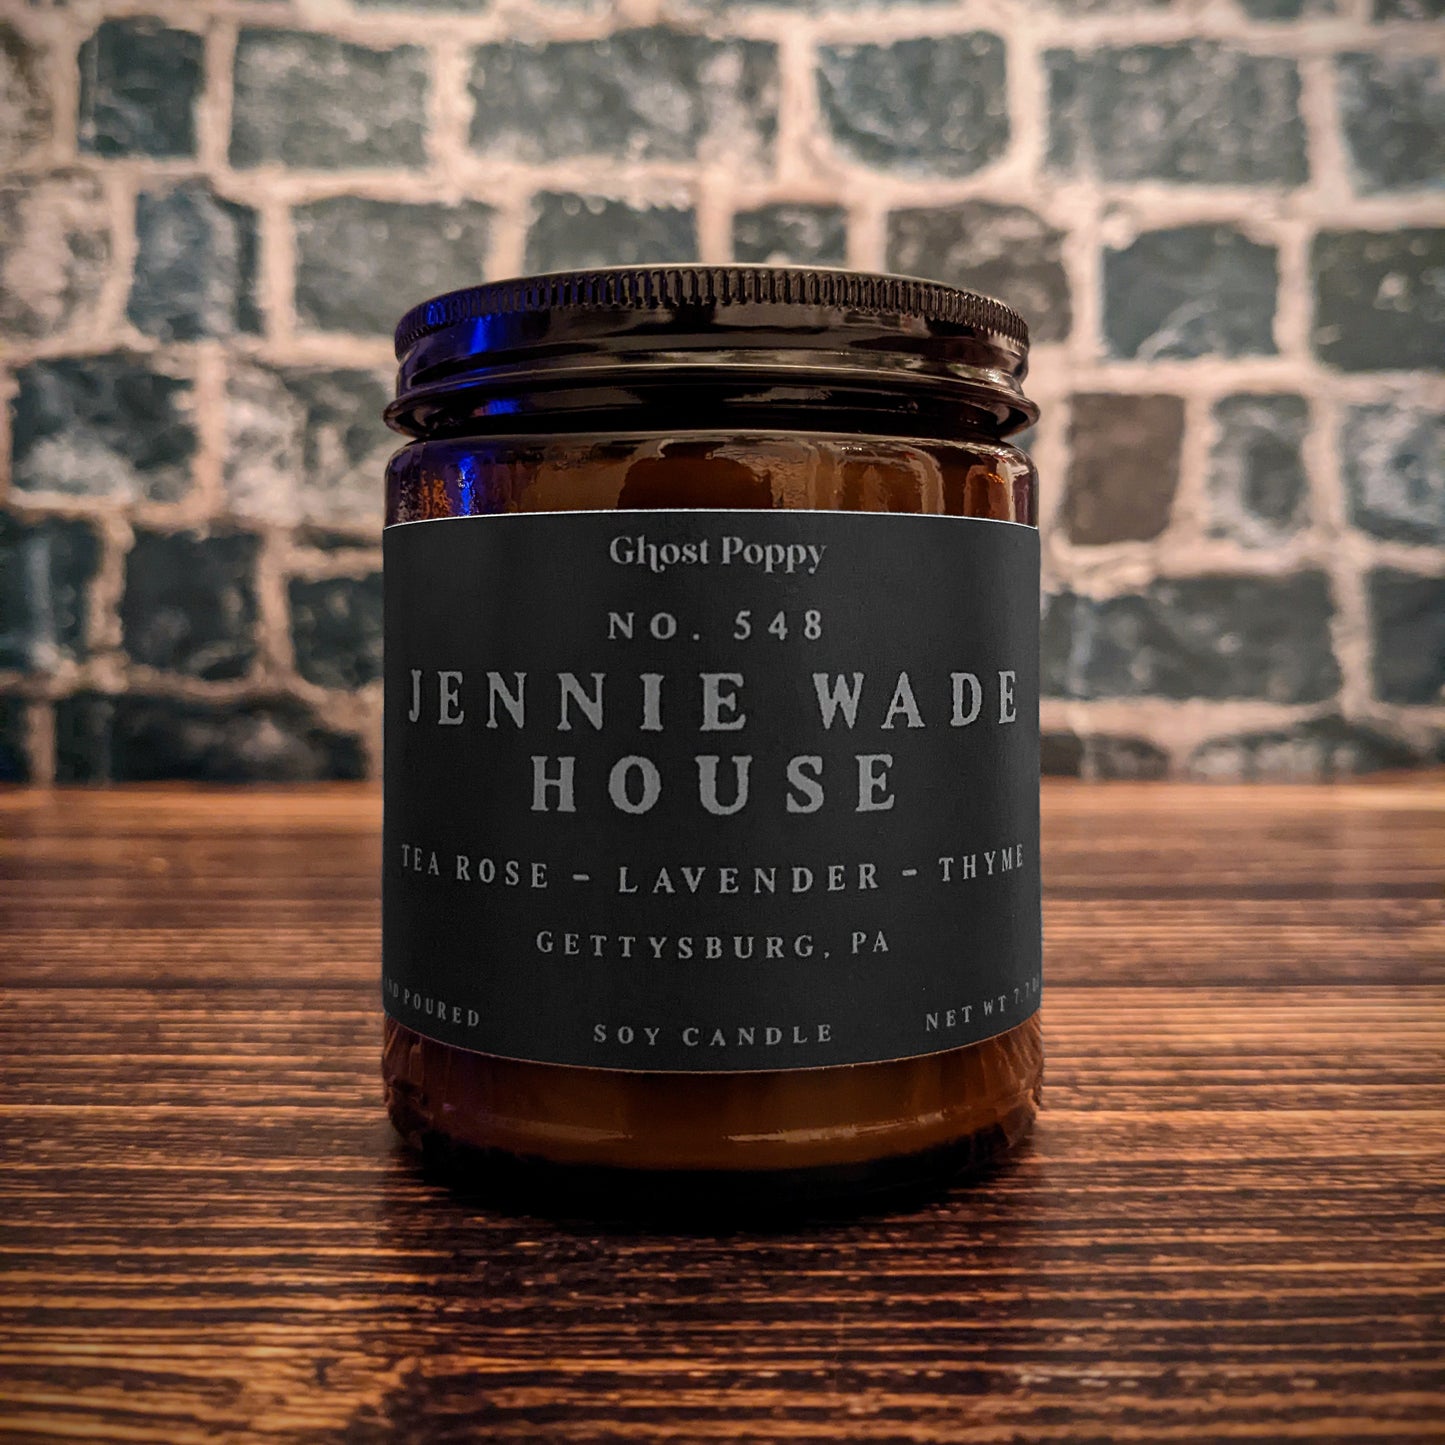 Jennie Wade House Candle